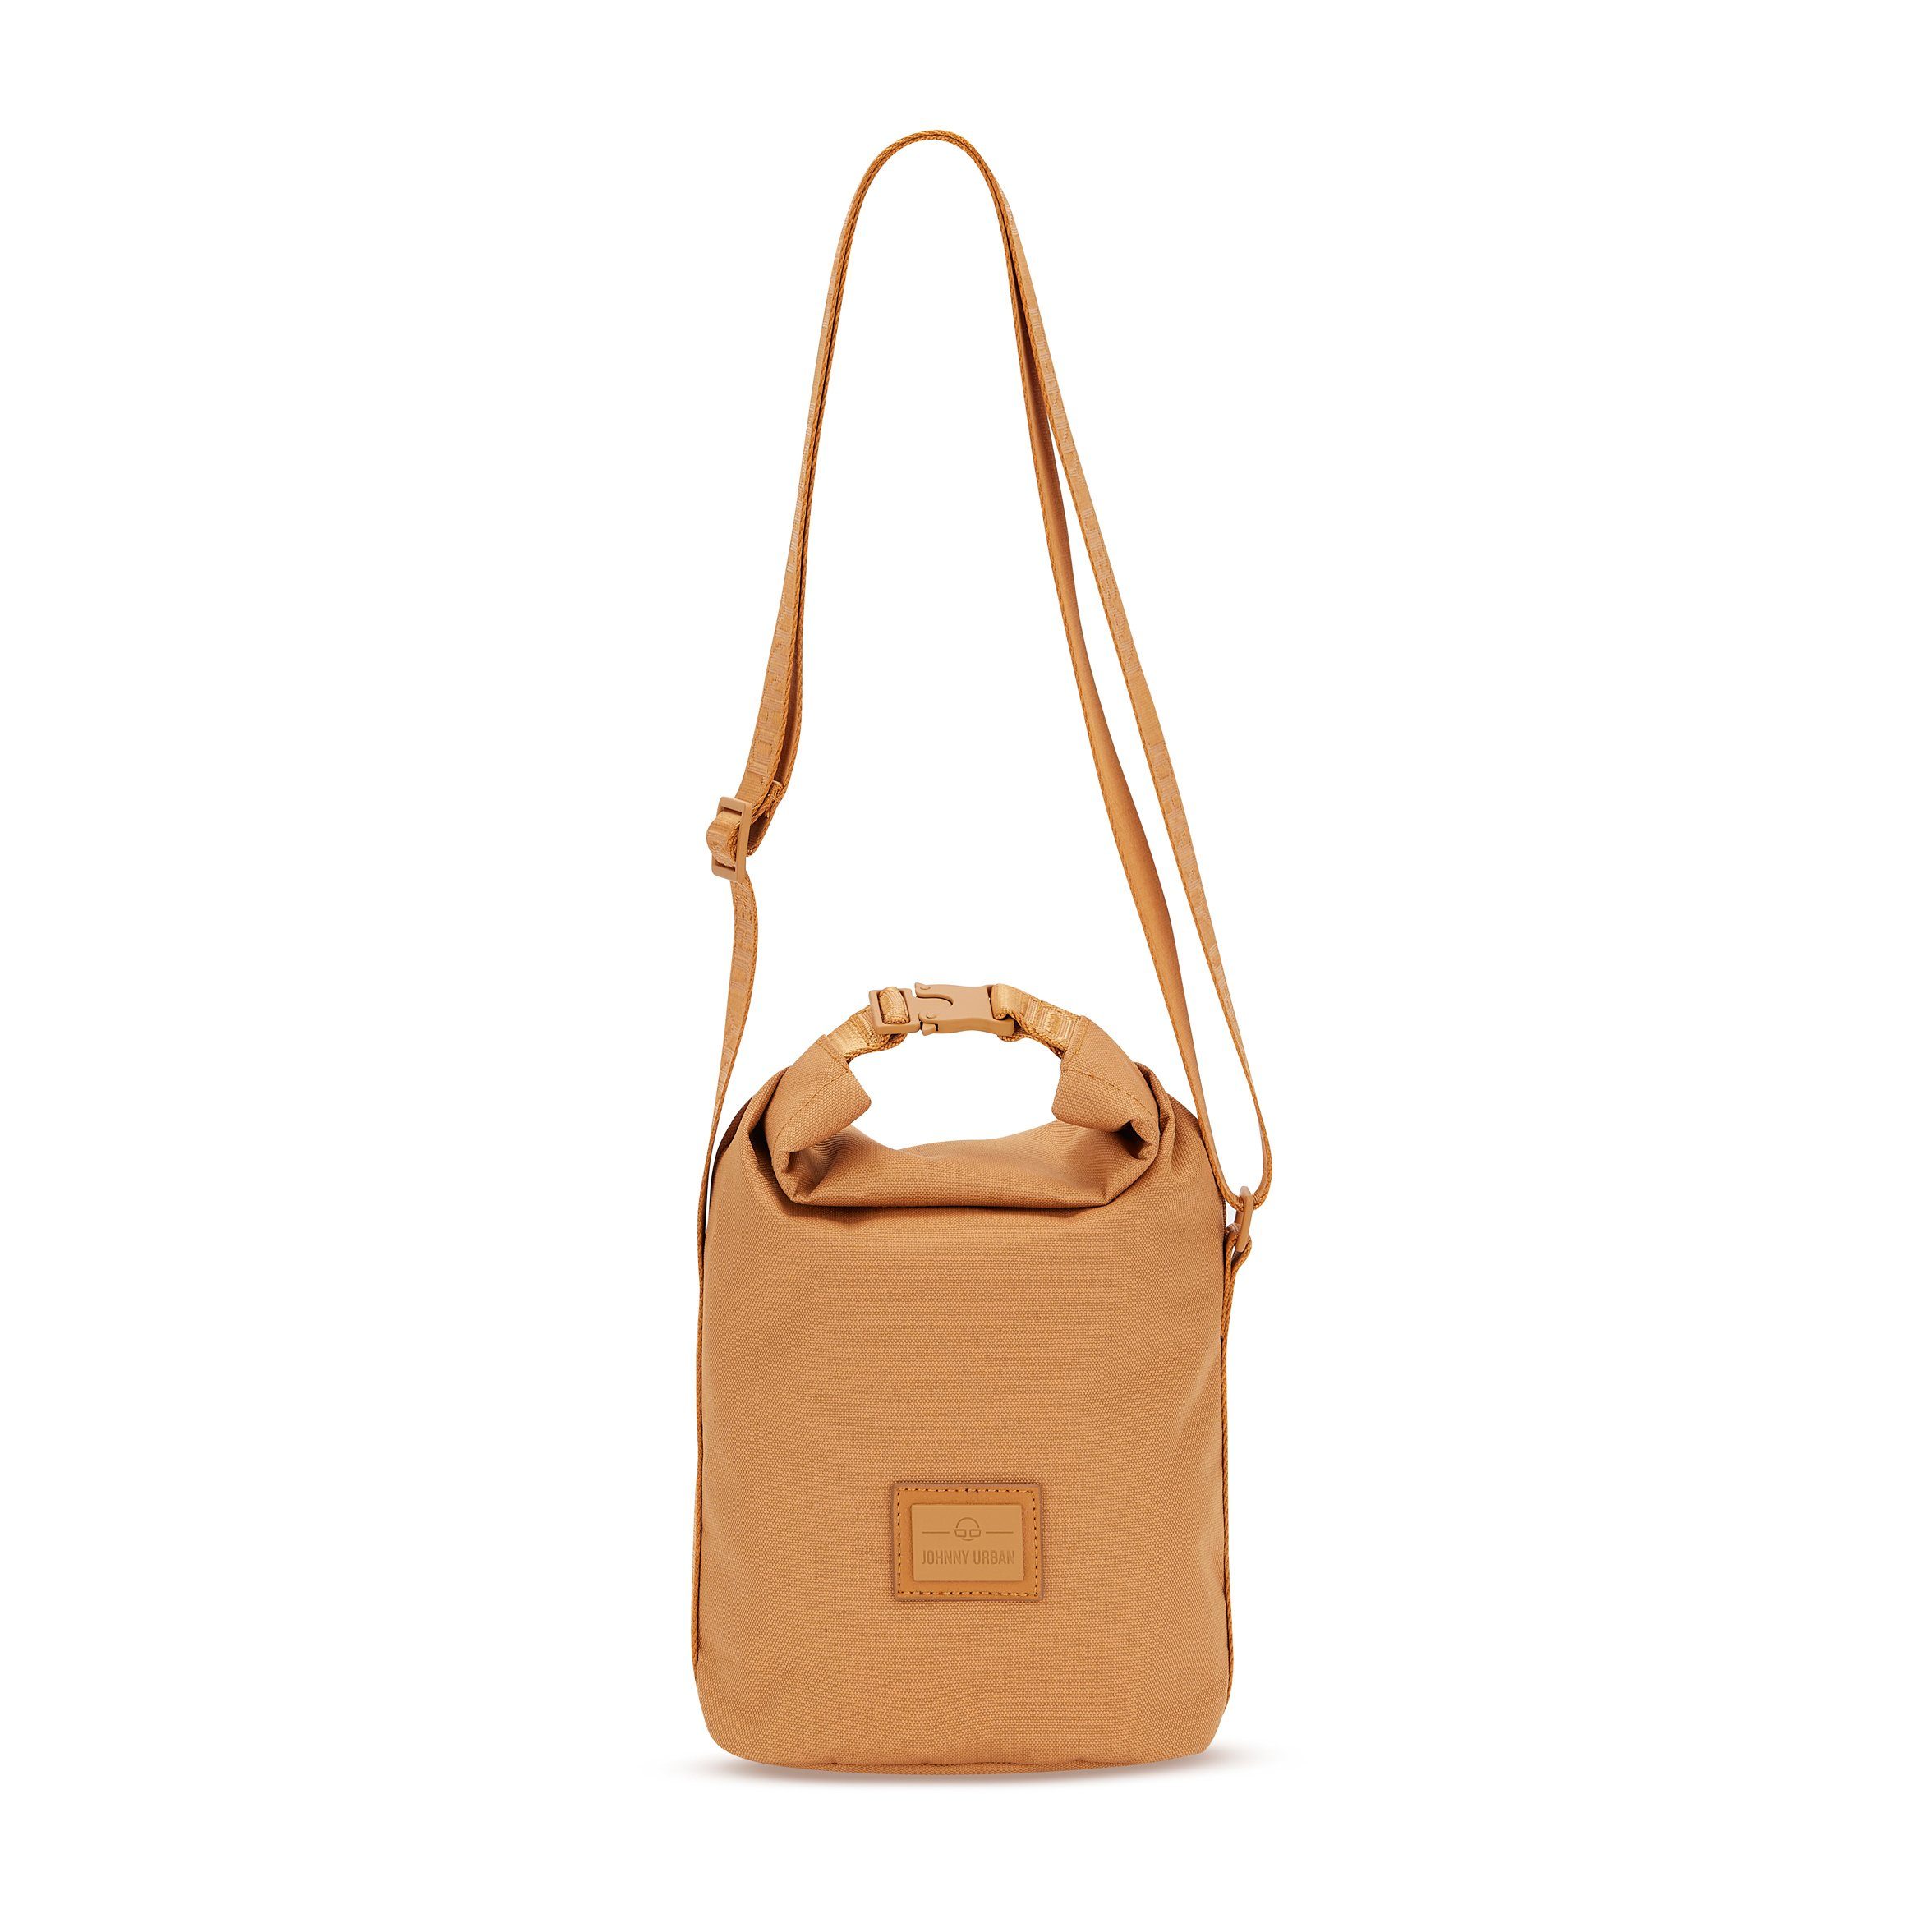 Johnny Urban Handtasche Handtasche Flexible Damen, Wasserabweisend RUE Caramel Umhängetasche, Stylische Größe